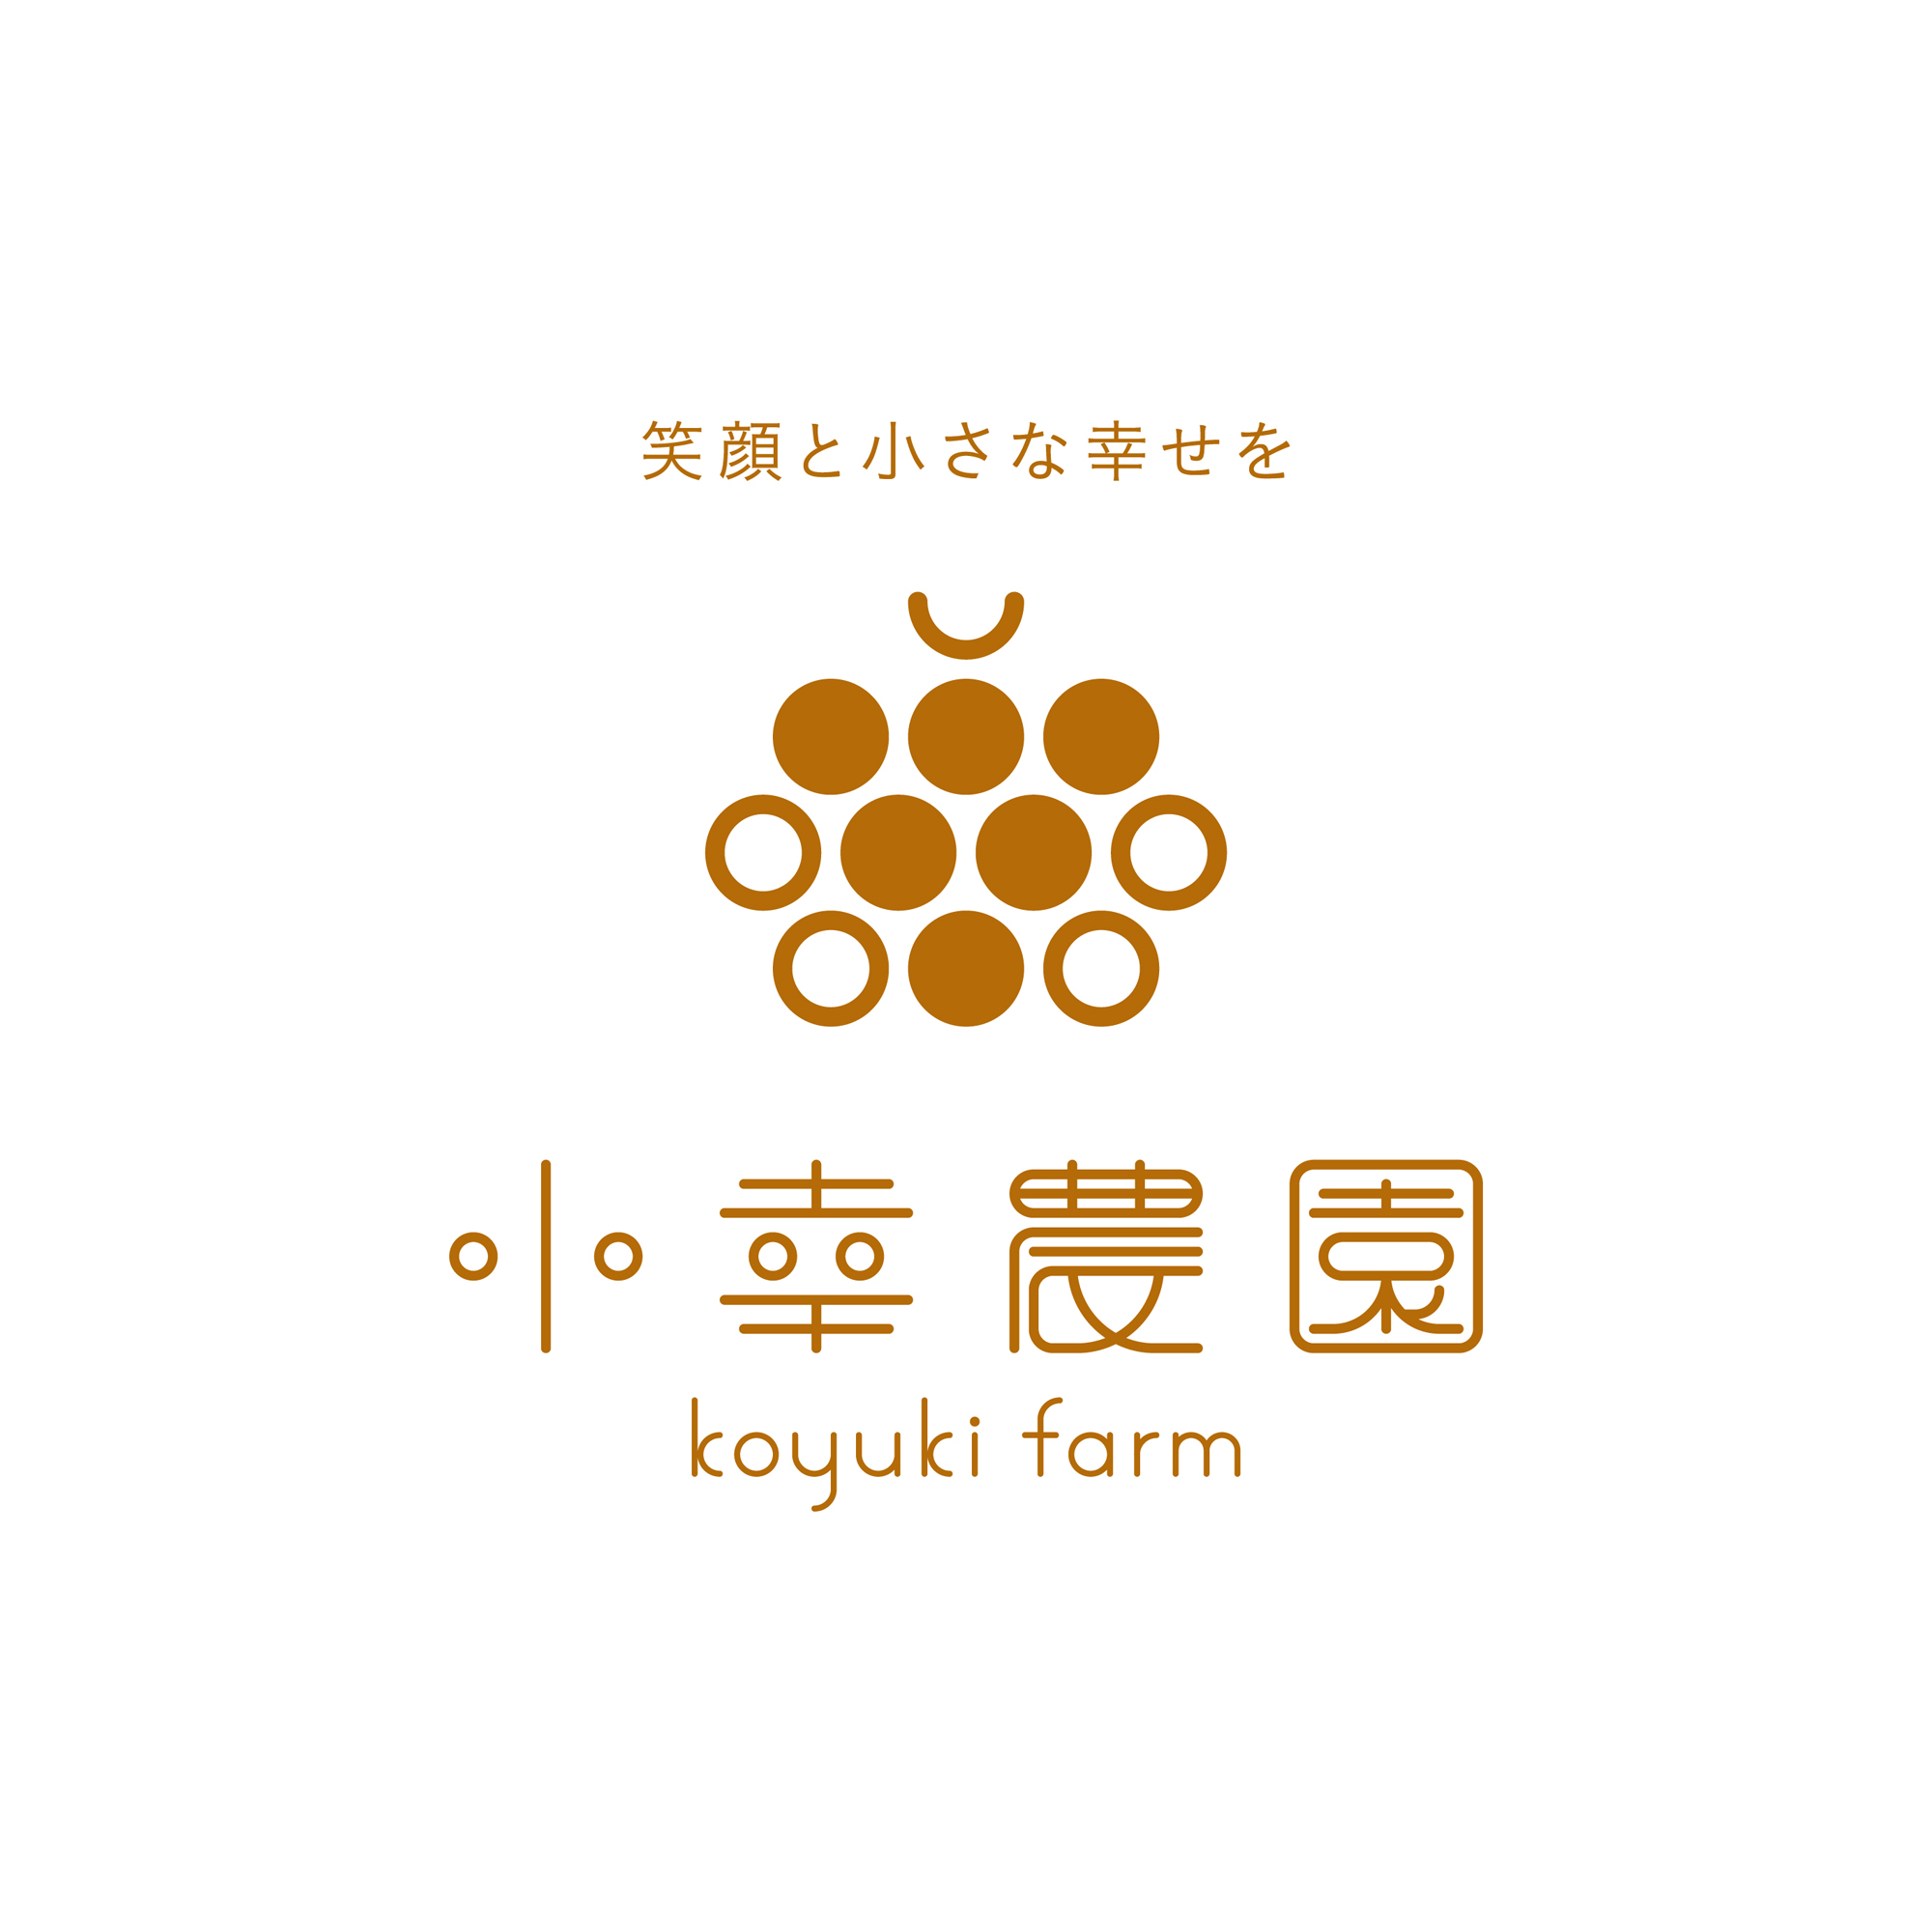 koyuki-farm-vi